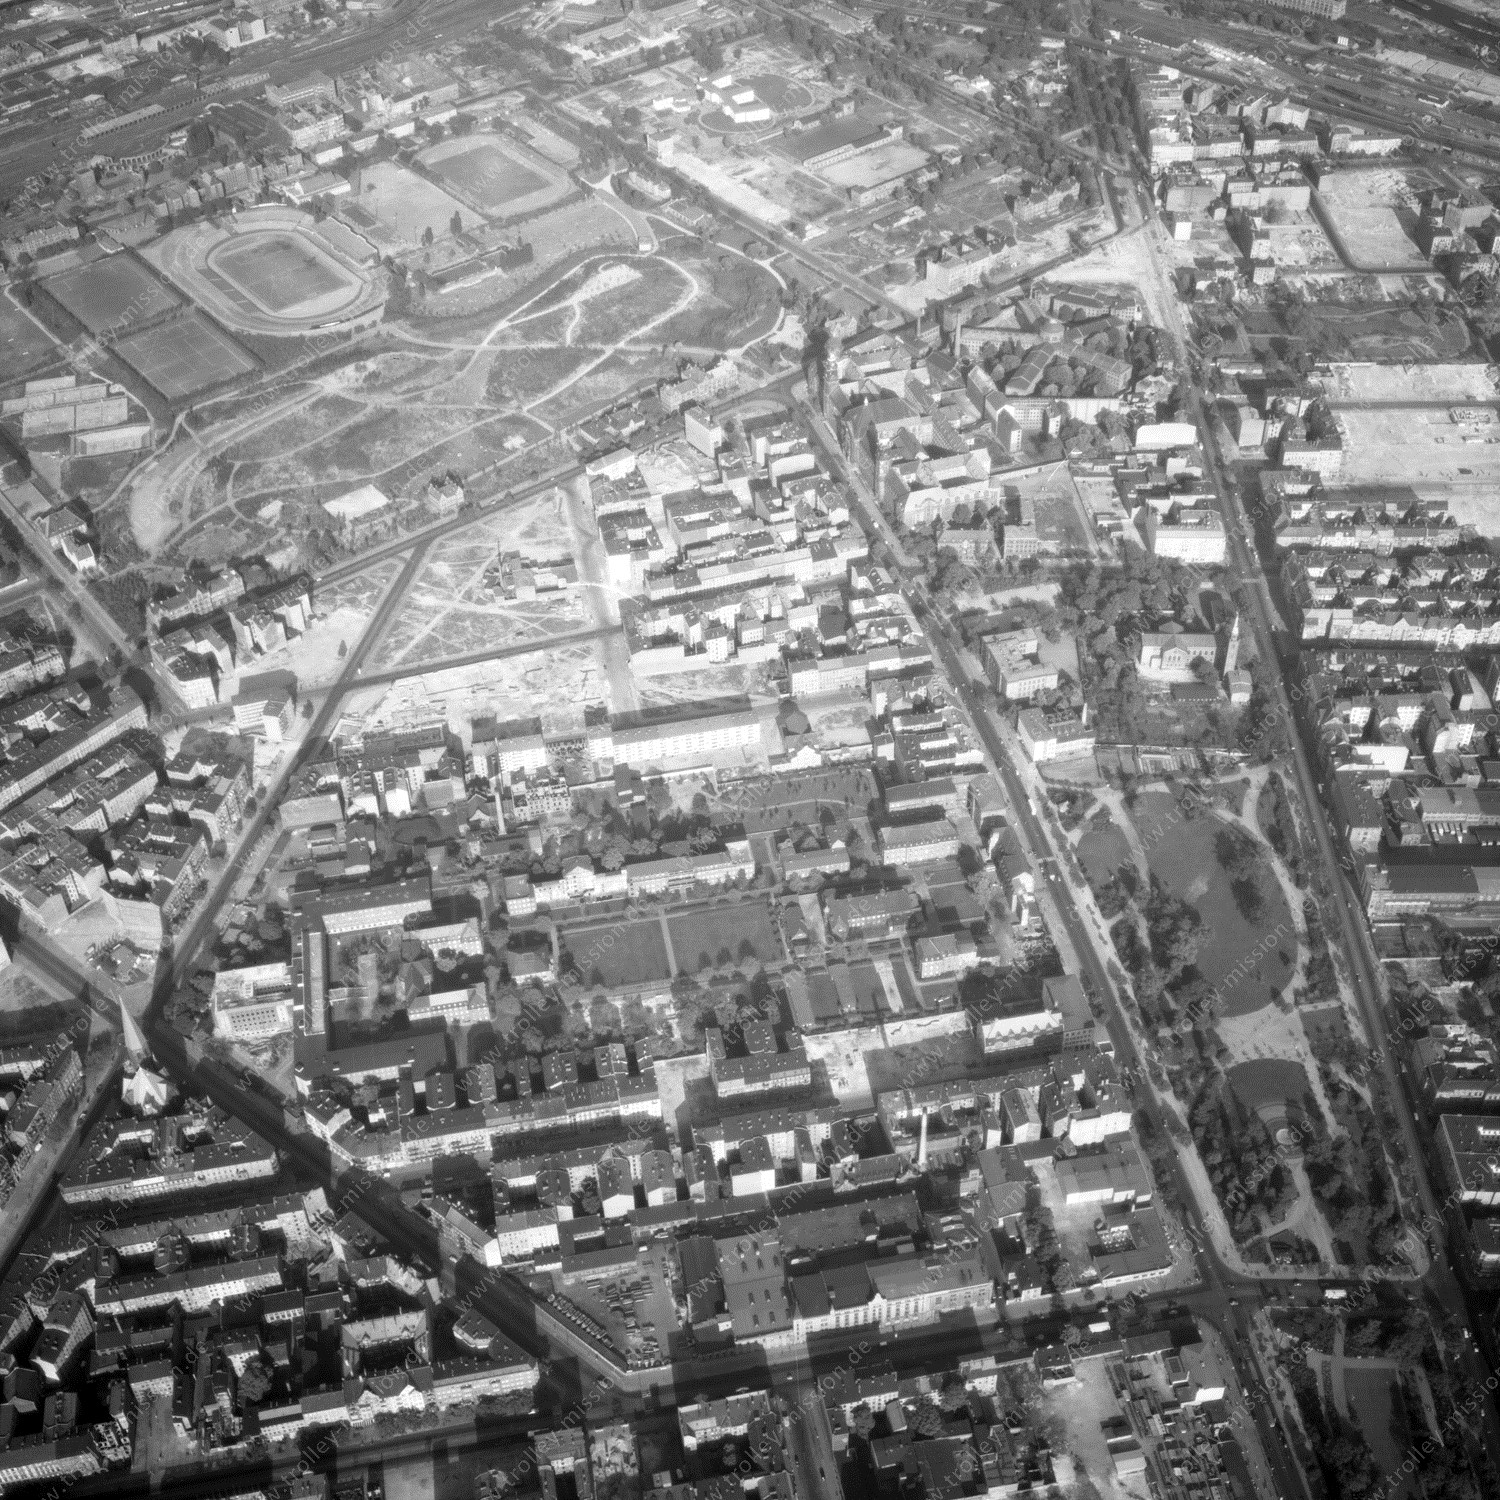 Alte Fotos und Luftbilder von Berlin - Luftbildaufnahme Nr. 01 - Historische Luftaufnahmen von West-Berlin aus dem Jahr 1954 - Flugstrecke Oscar